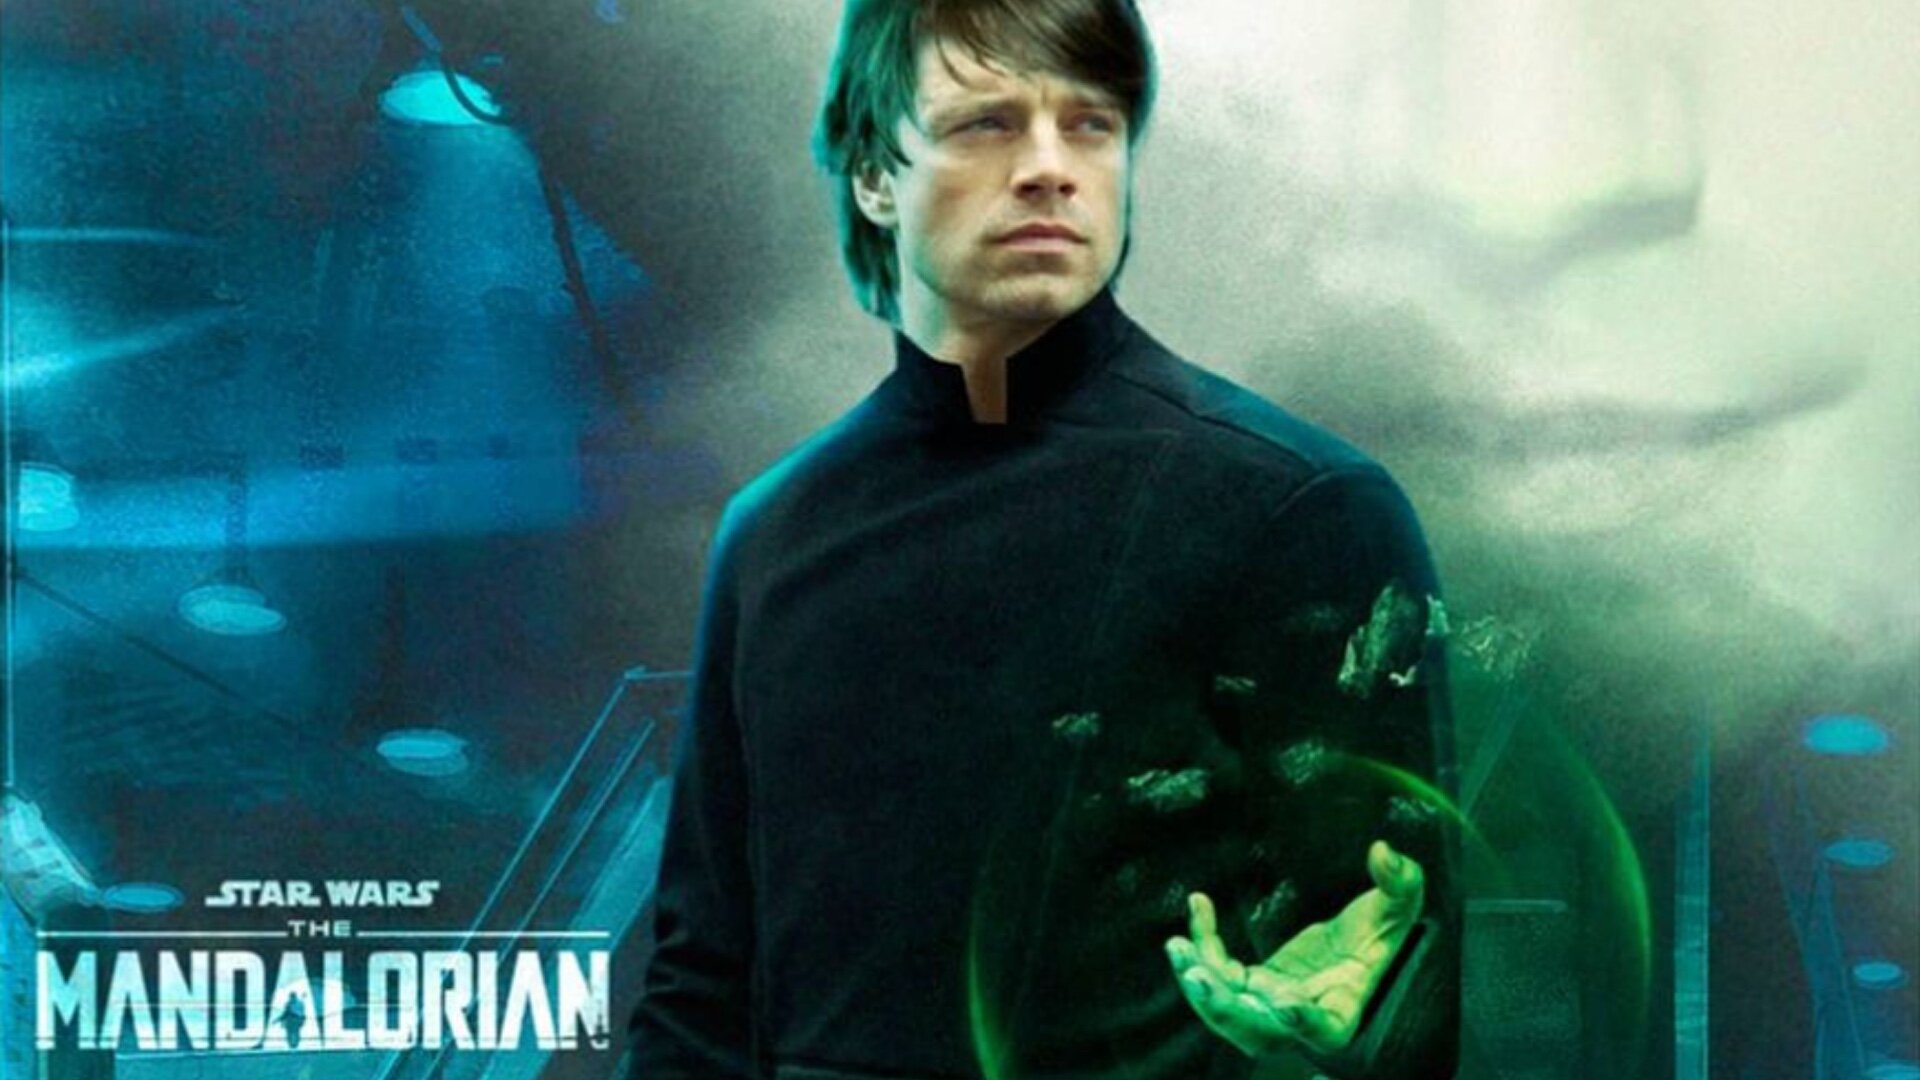 Fan Art Imagines Sebastian Stan as Luke Skywalker in THE MANDALORIAN